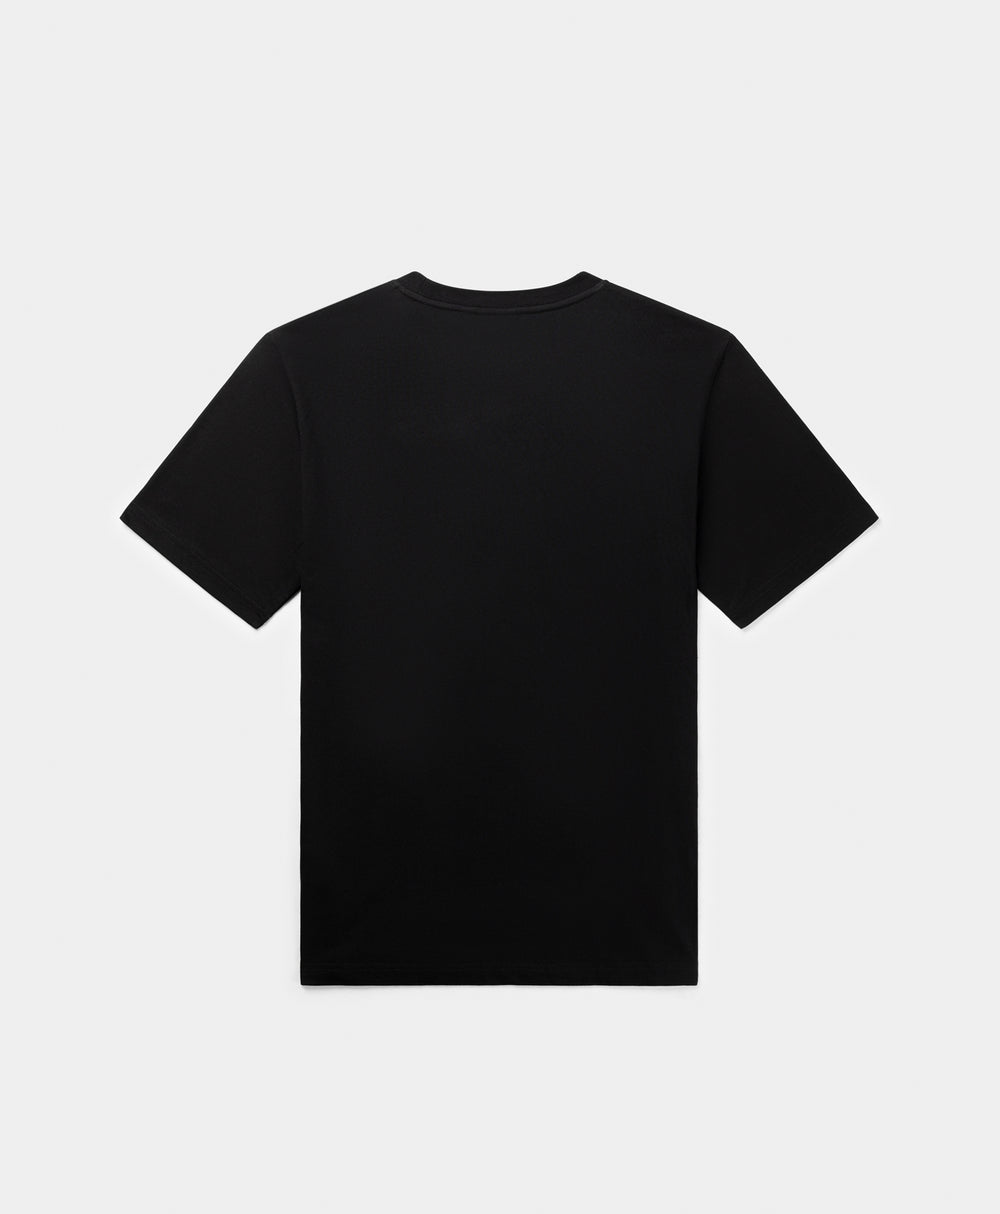 DP - Black Landscape T-Shirt - Packshot - Rear